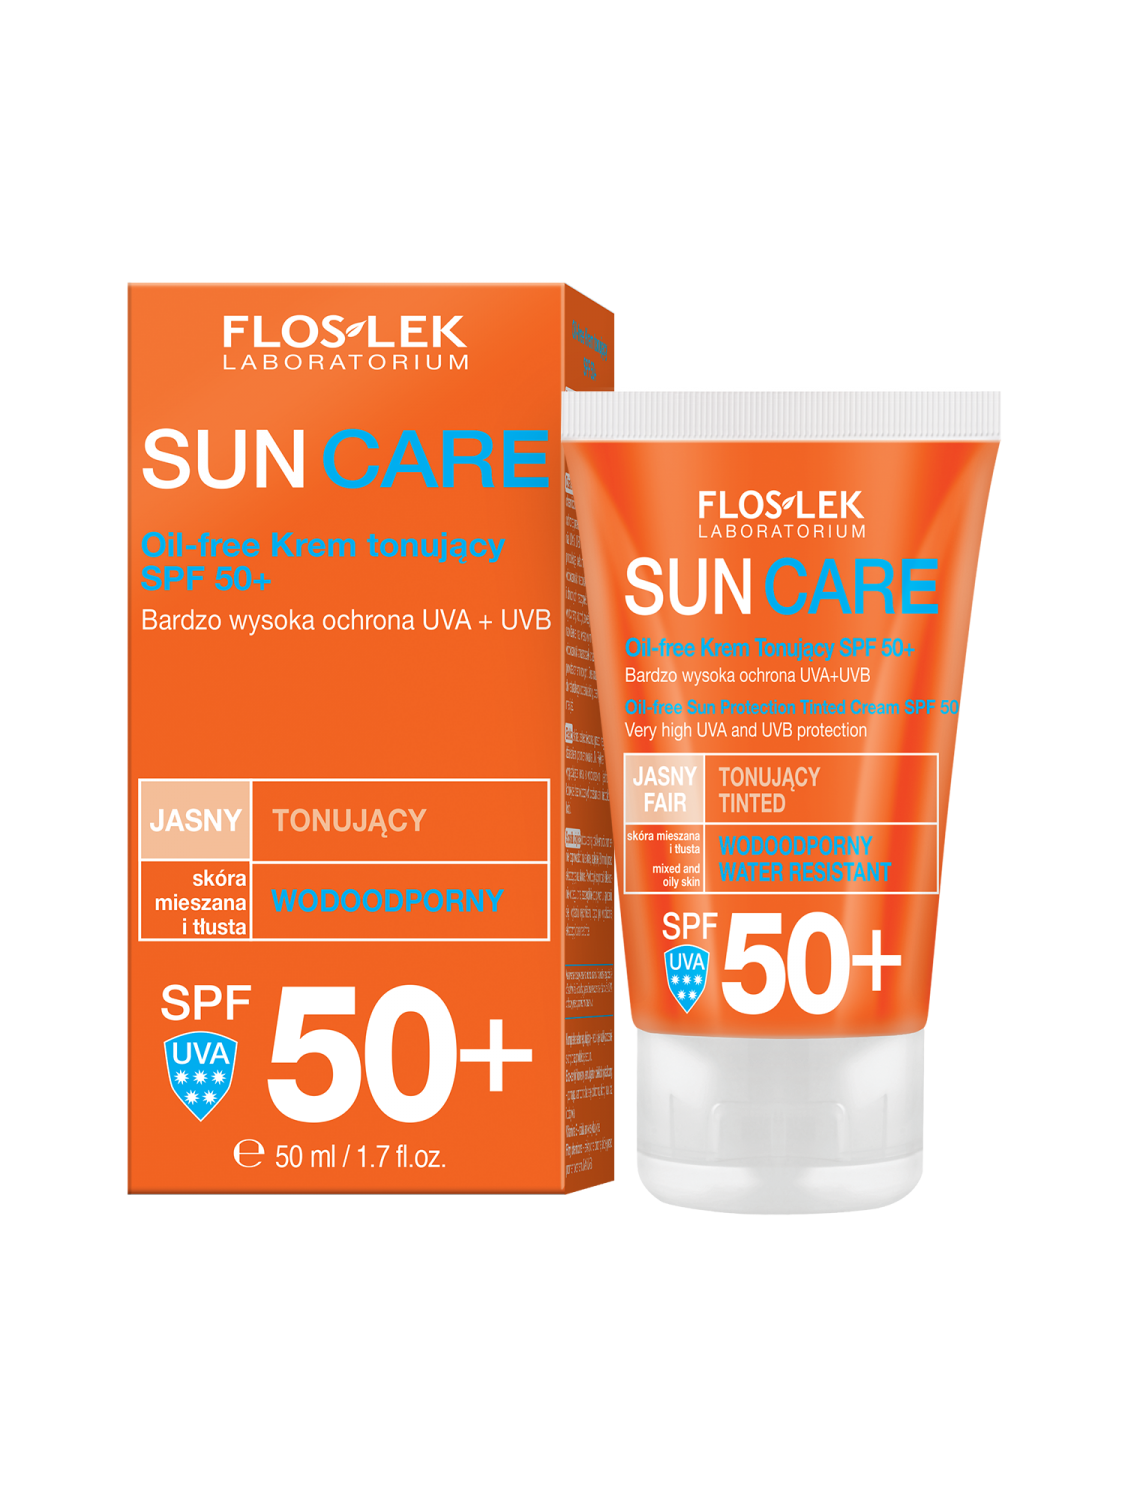 SUN CARE Ölfrei Gesichts-Toning-Creme Für gemischte und fettige Haut SPF 50+ 50 ml - Floslek